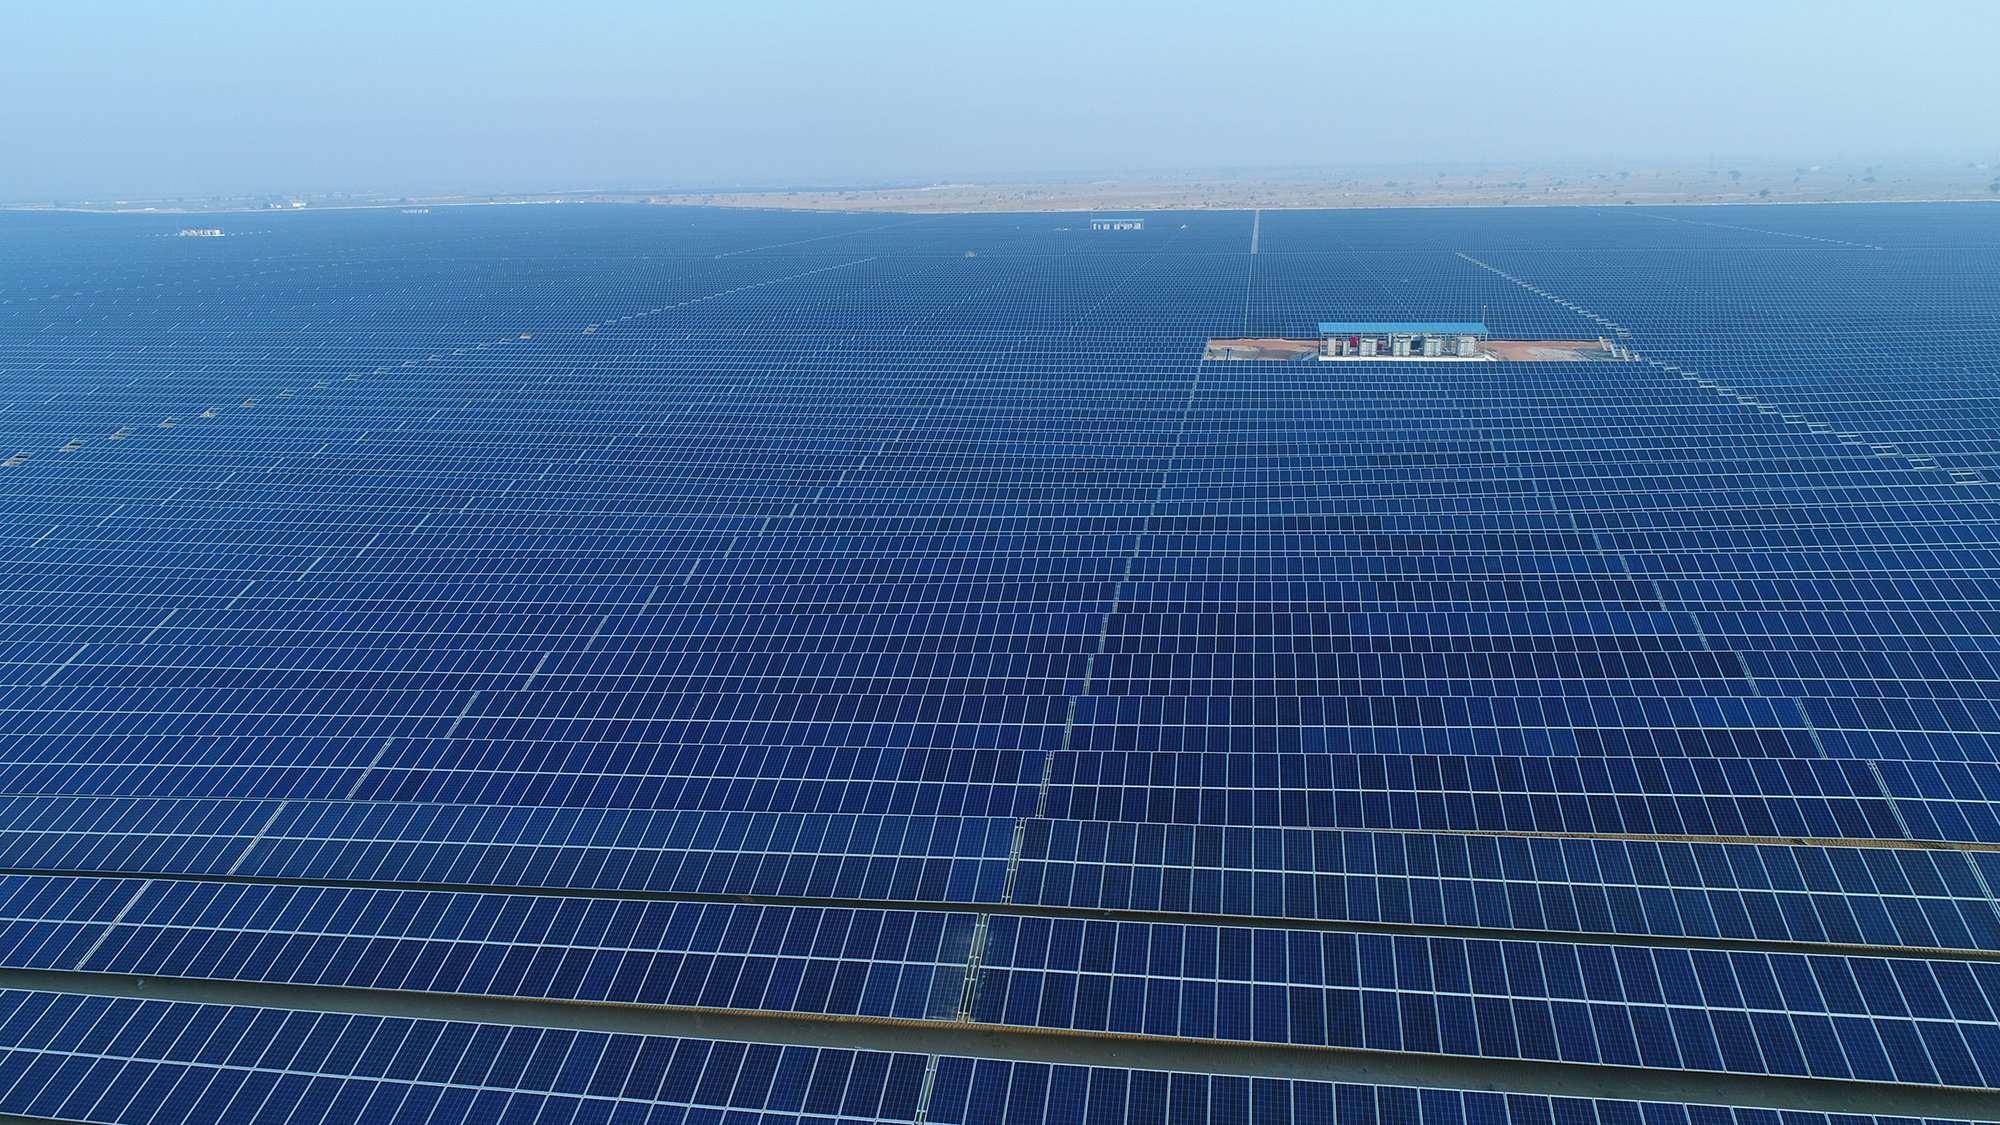 राजस्थान के बिजलीघरों मं कोयले की कमी, 6 कंपनियों से खरीदेंगे 1785 मेगावाट सौर ऊर्जा